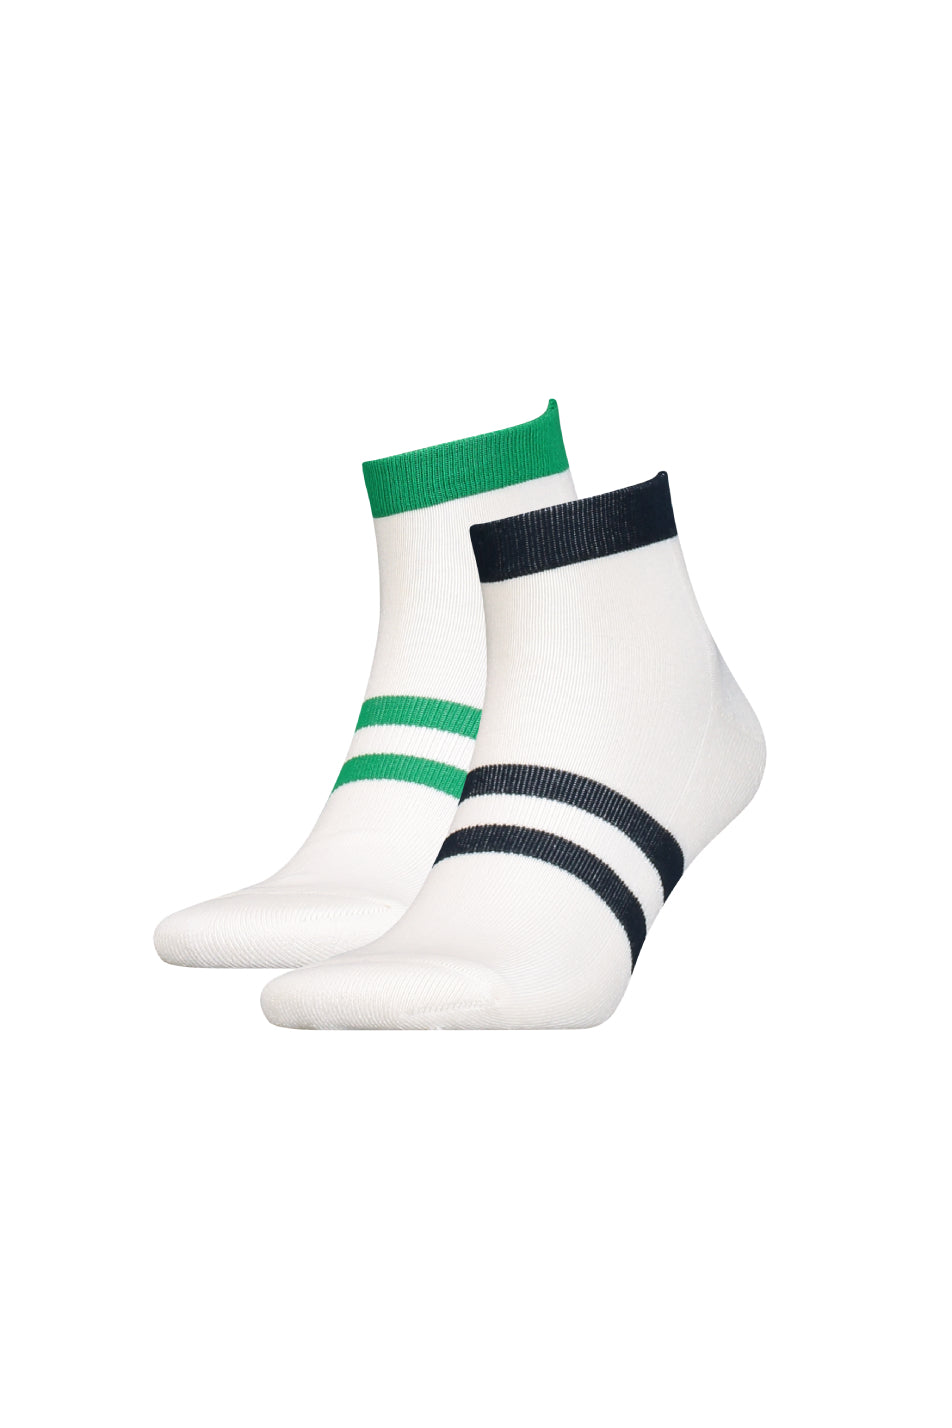 Levi's 2 Pack Unisex Mid Cut Socks